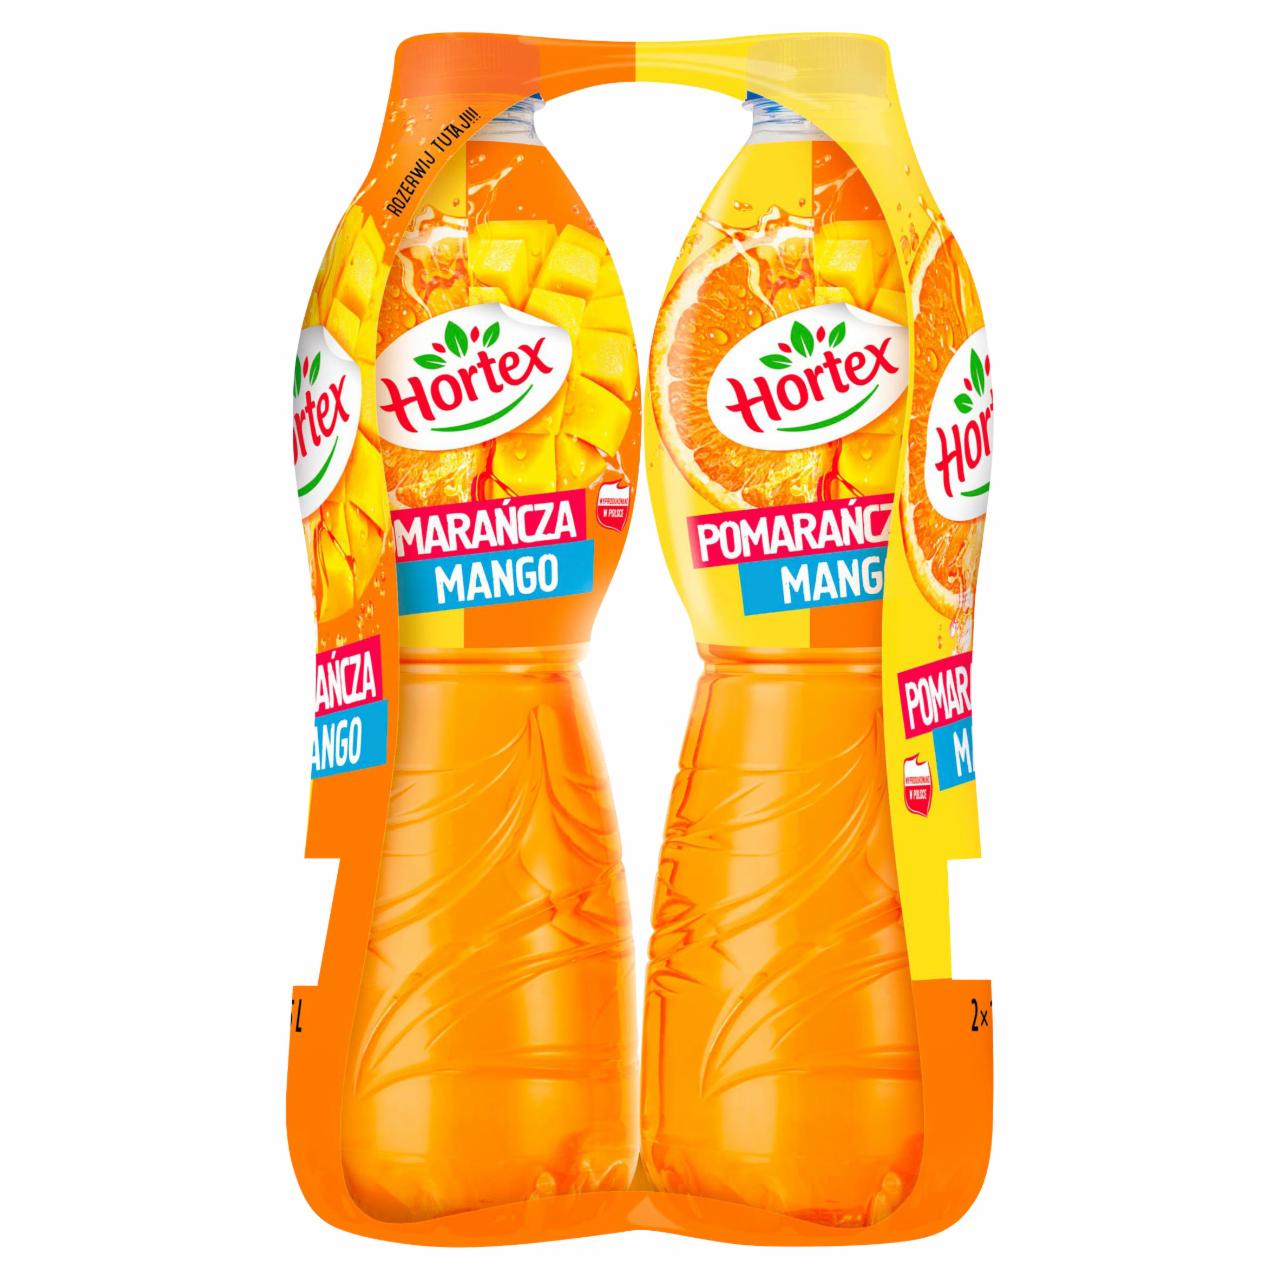 Zdjęcia - Hortex Napój pomarańcza mango 2 x 1,75 l